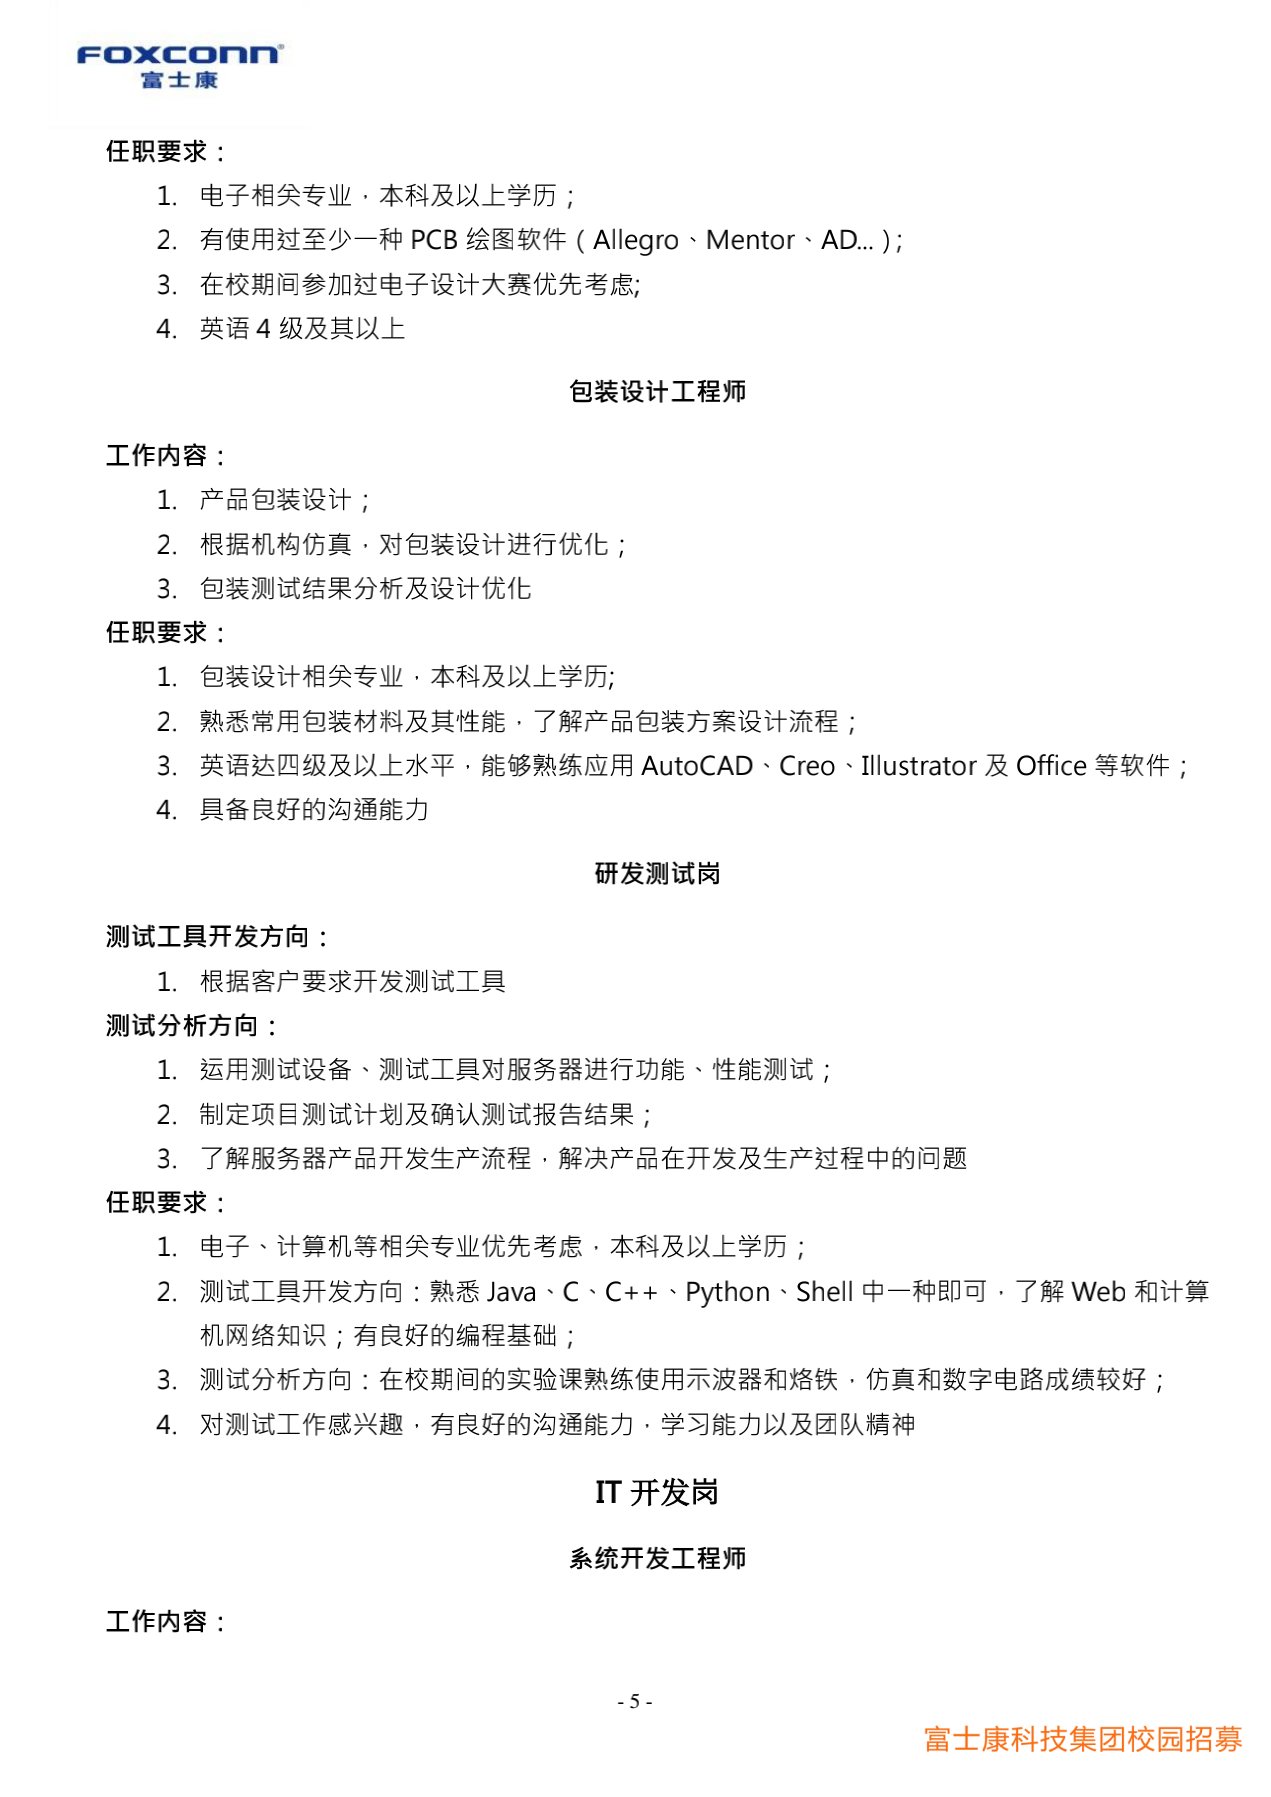 富士康科技集团天津科技园2022届校园招聘简章20210915(研发)_5.jpg